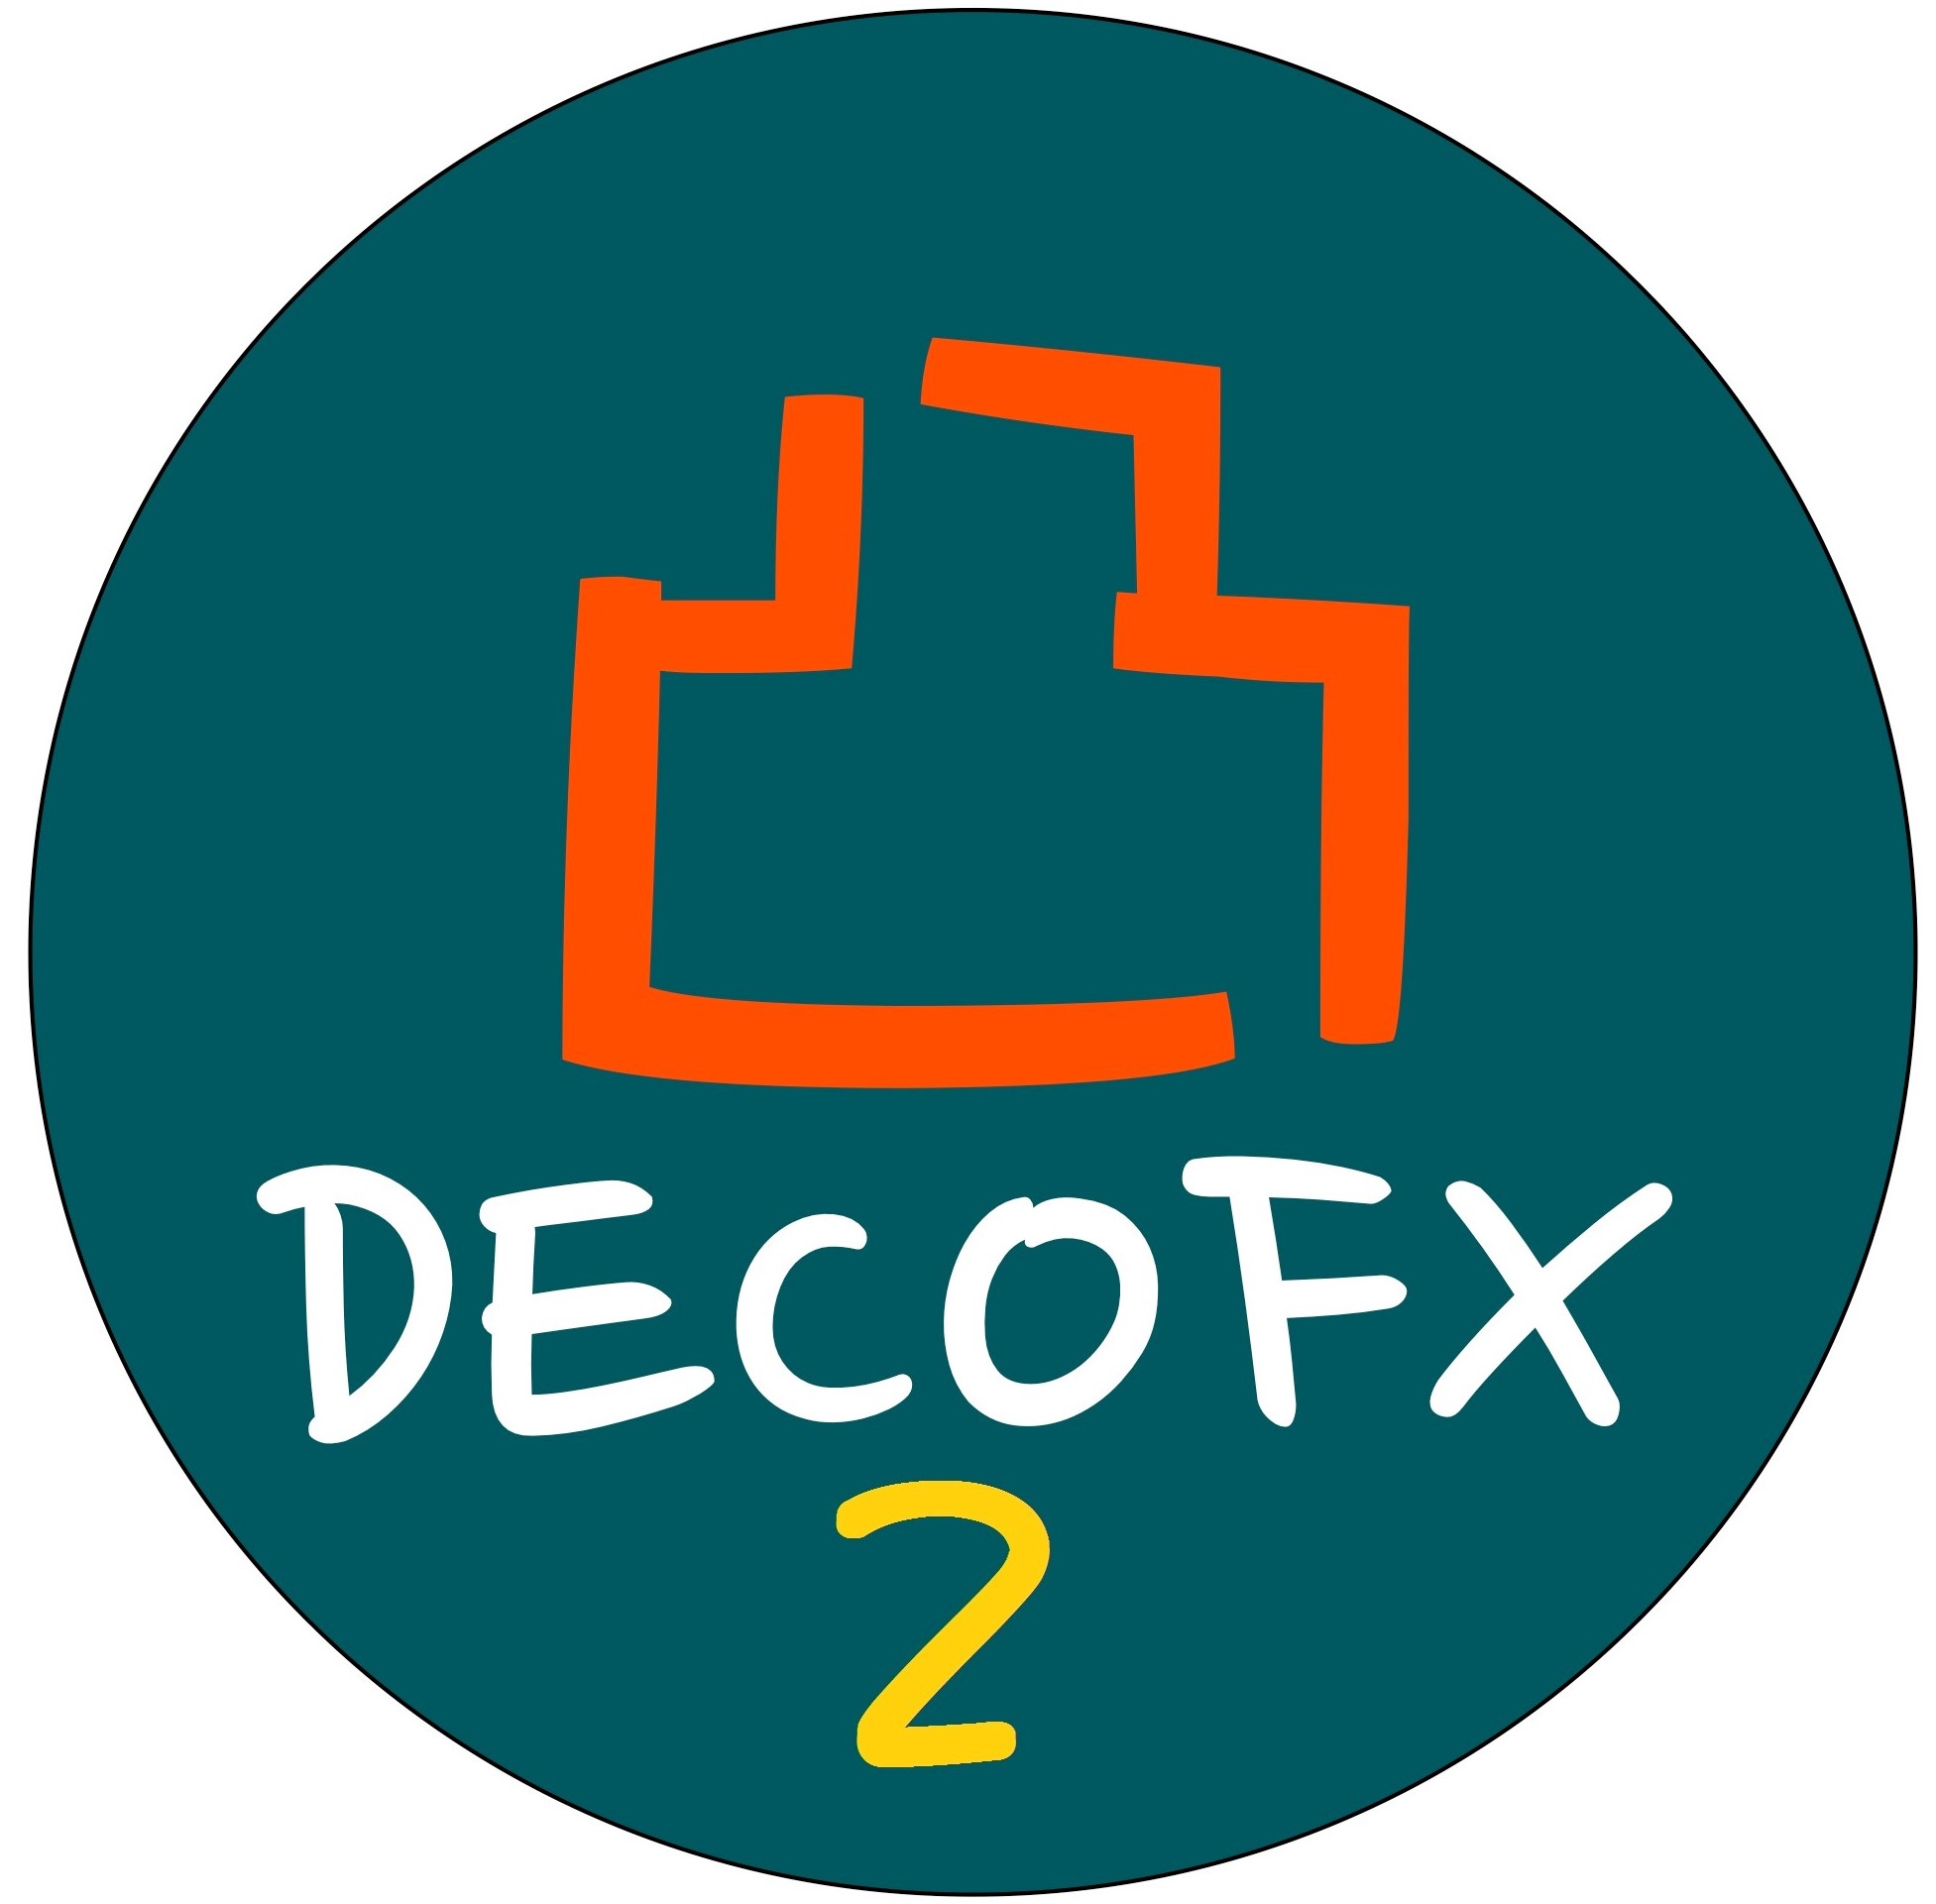 お好みの時間軸でトレードポイントを可視化『DECO FX2』